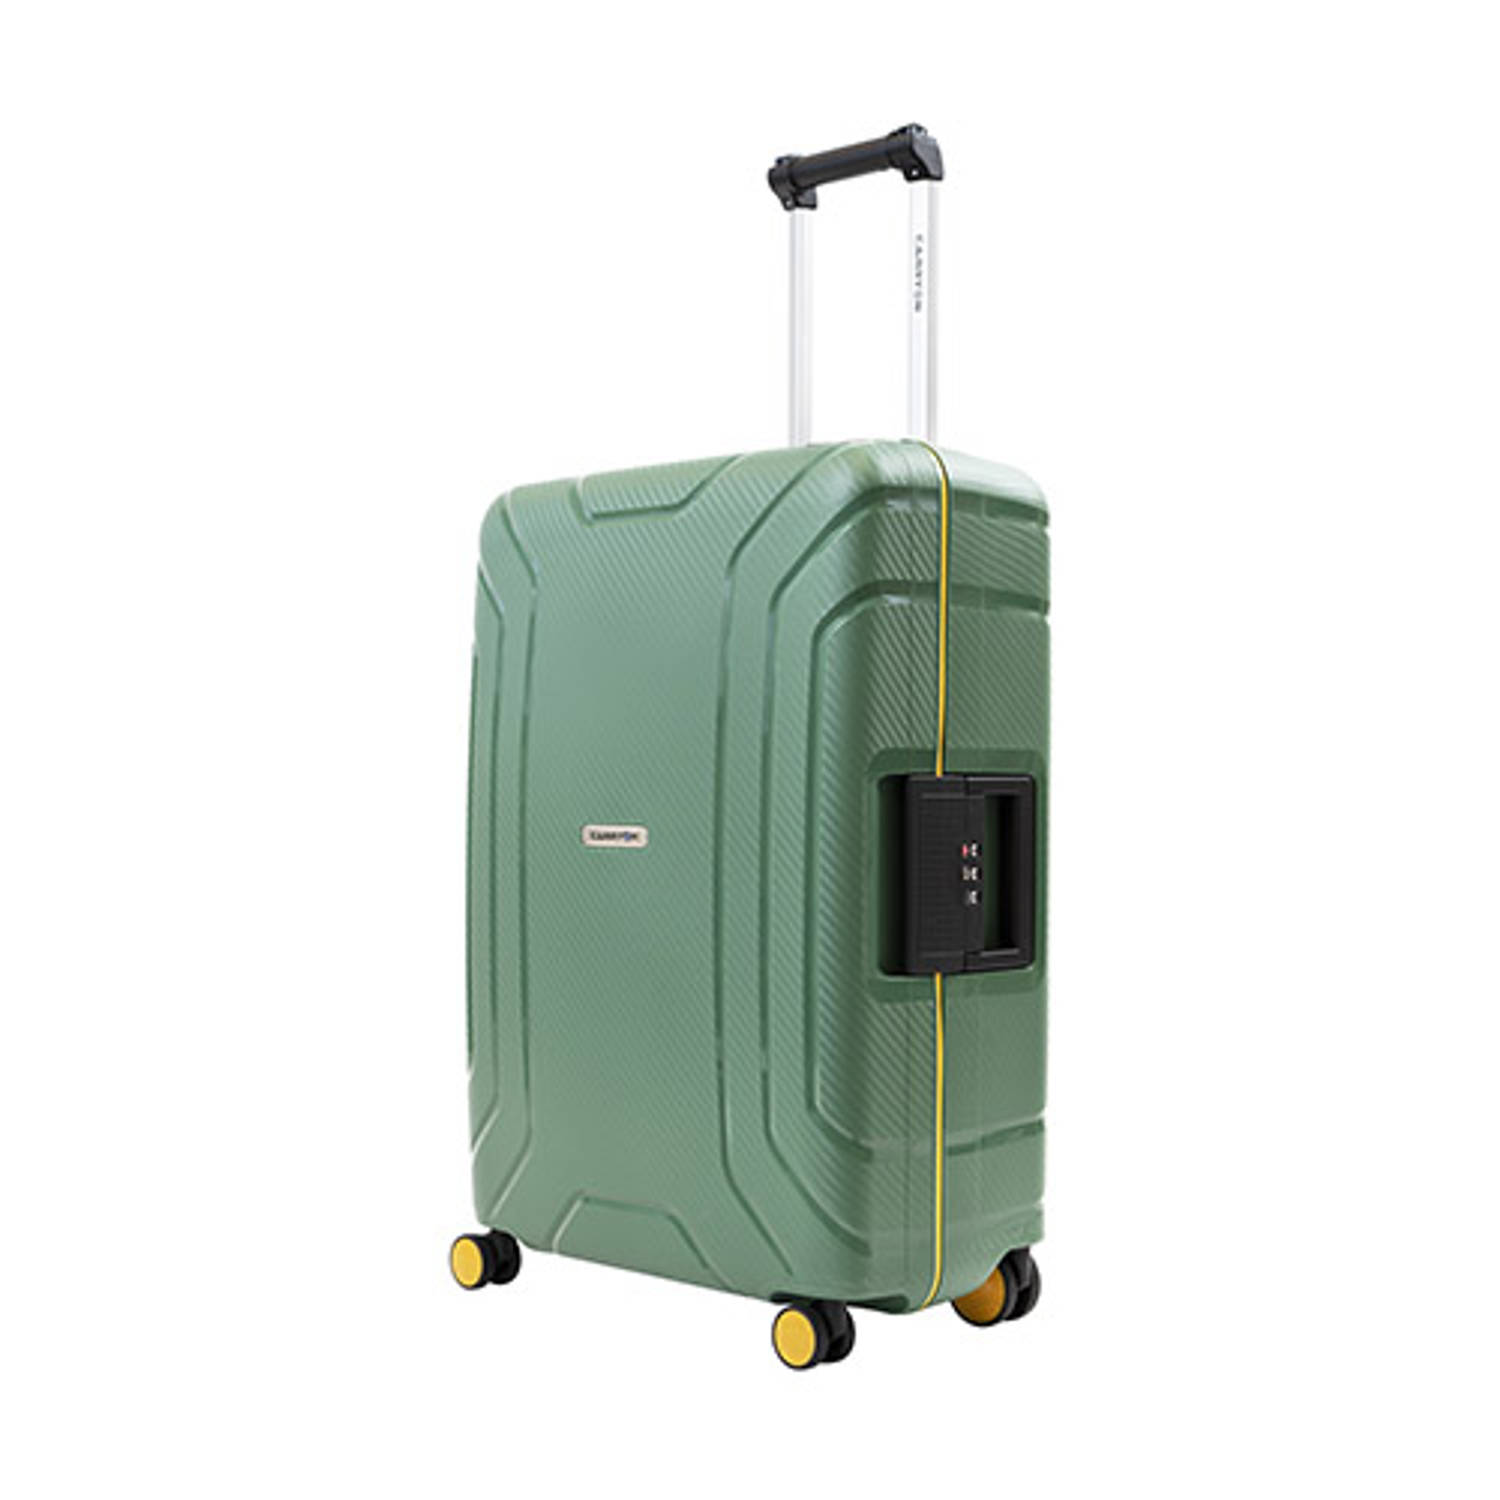 CarryOn Steward TSA Reiskoffer - 75cm Trolley met kliksloten - Dubbele wielen - Groen